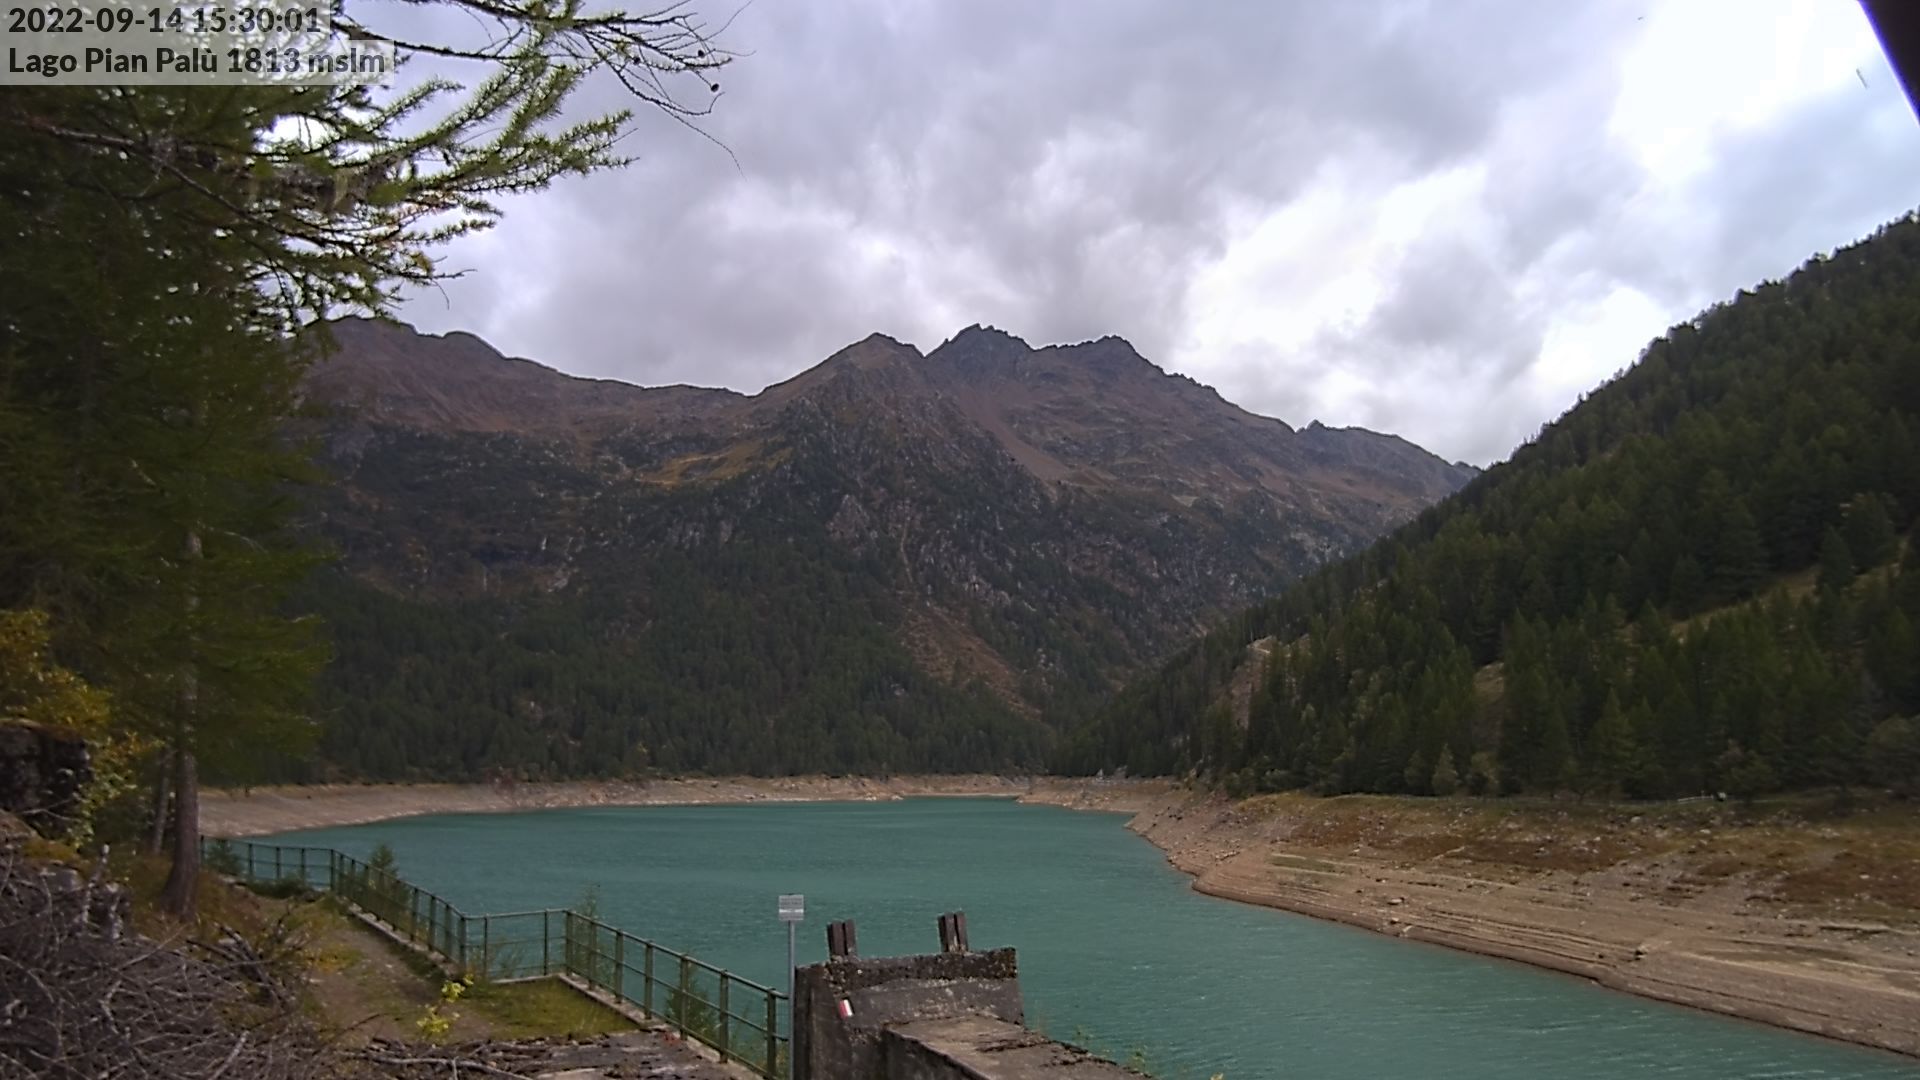 webcam Lago di Pian Palù,  webcam provincia di Trento, 
                                            webcam Trentino-Alto Adige, webcam alpi